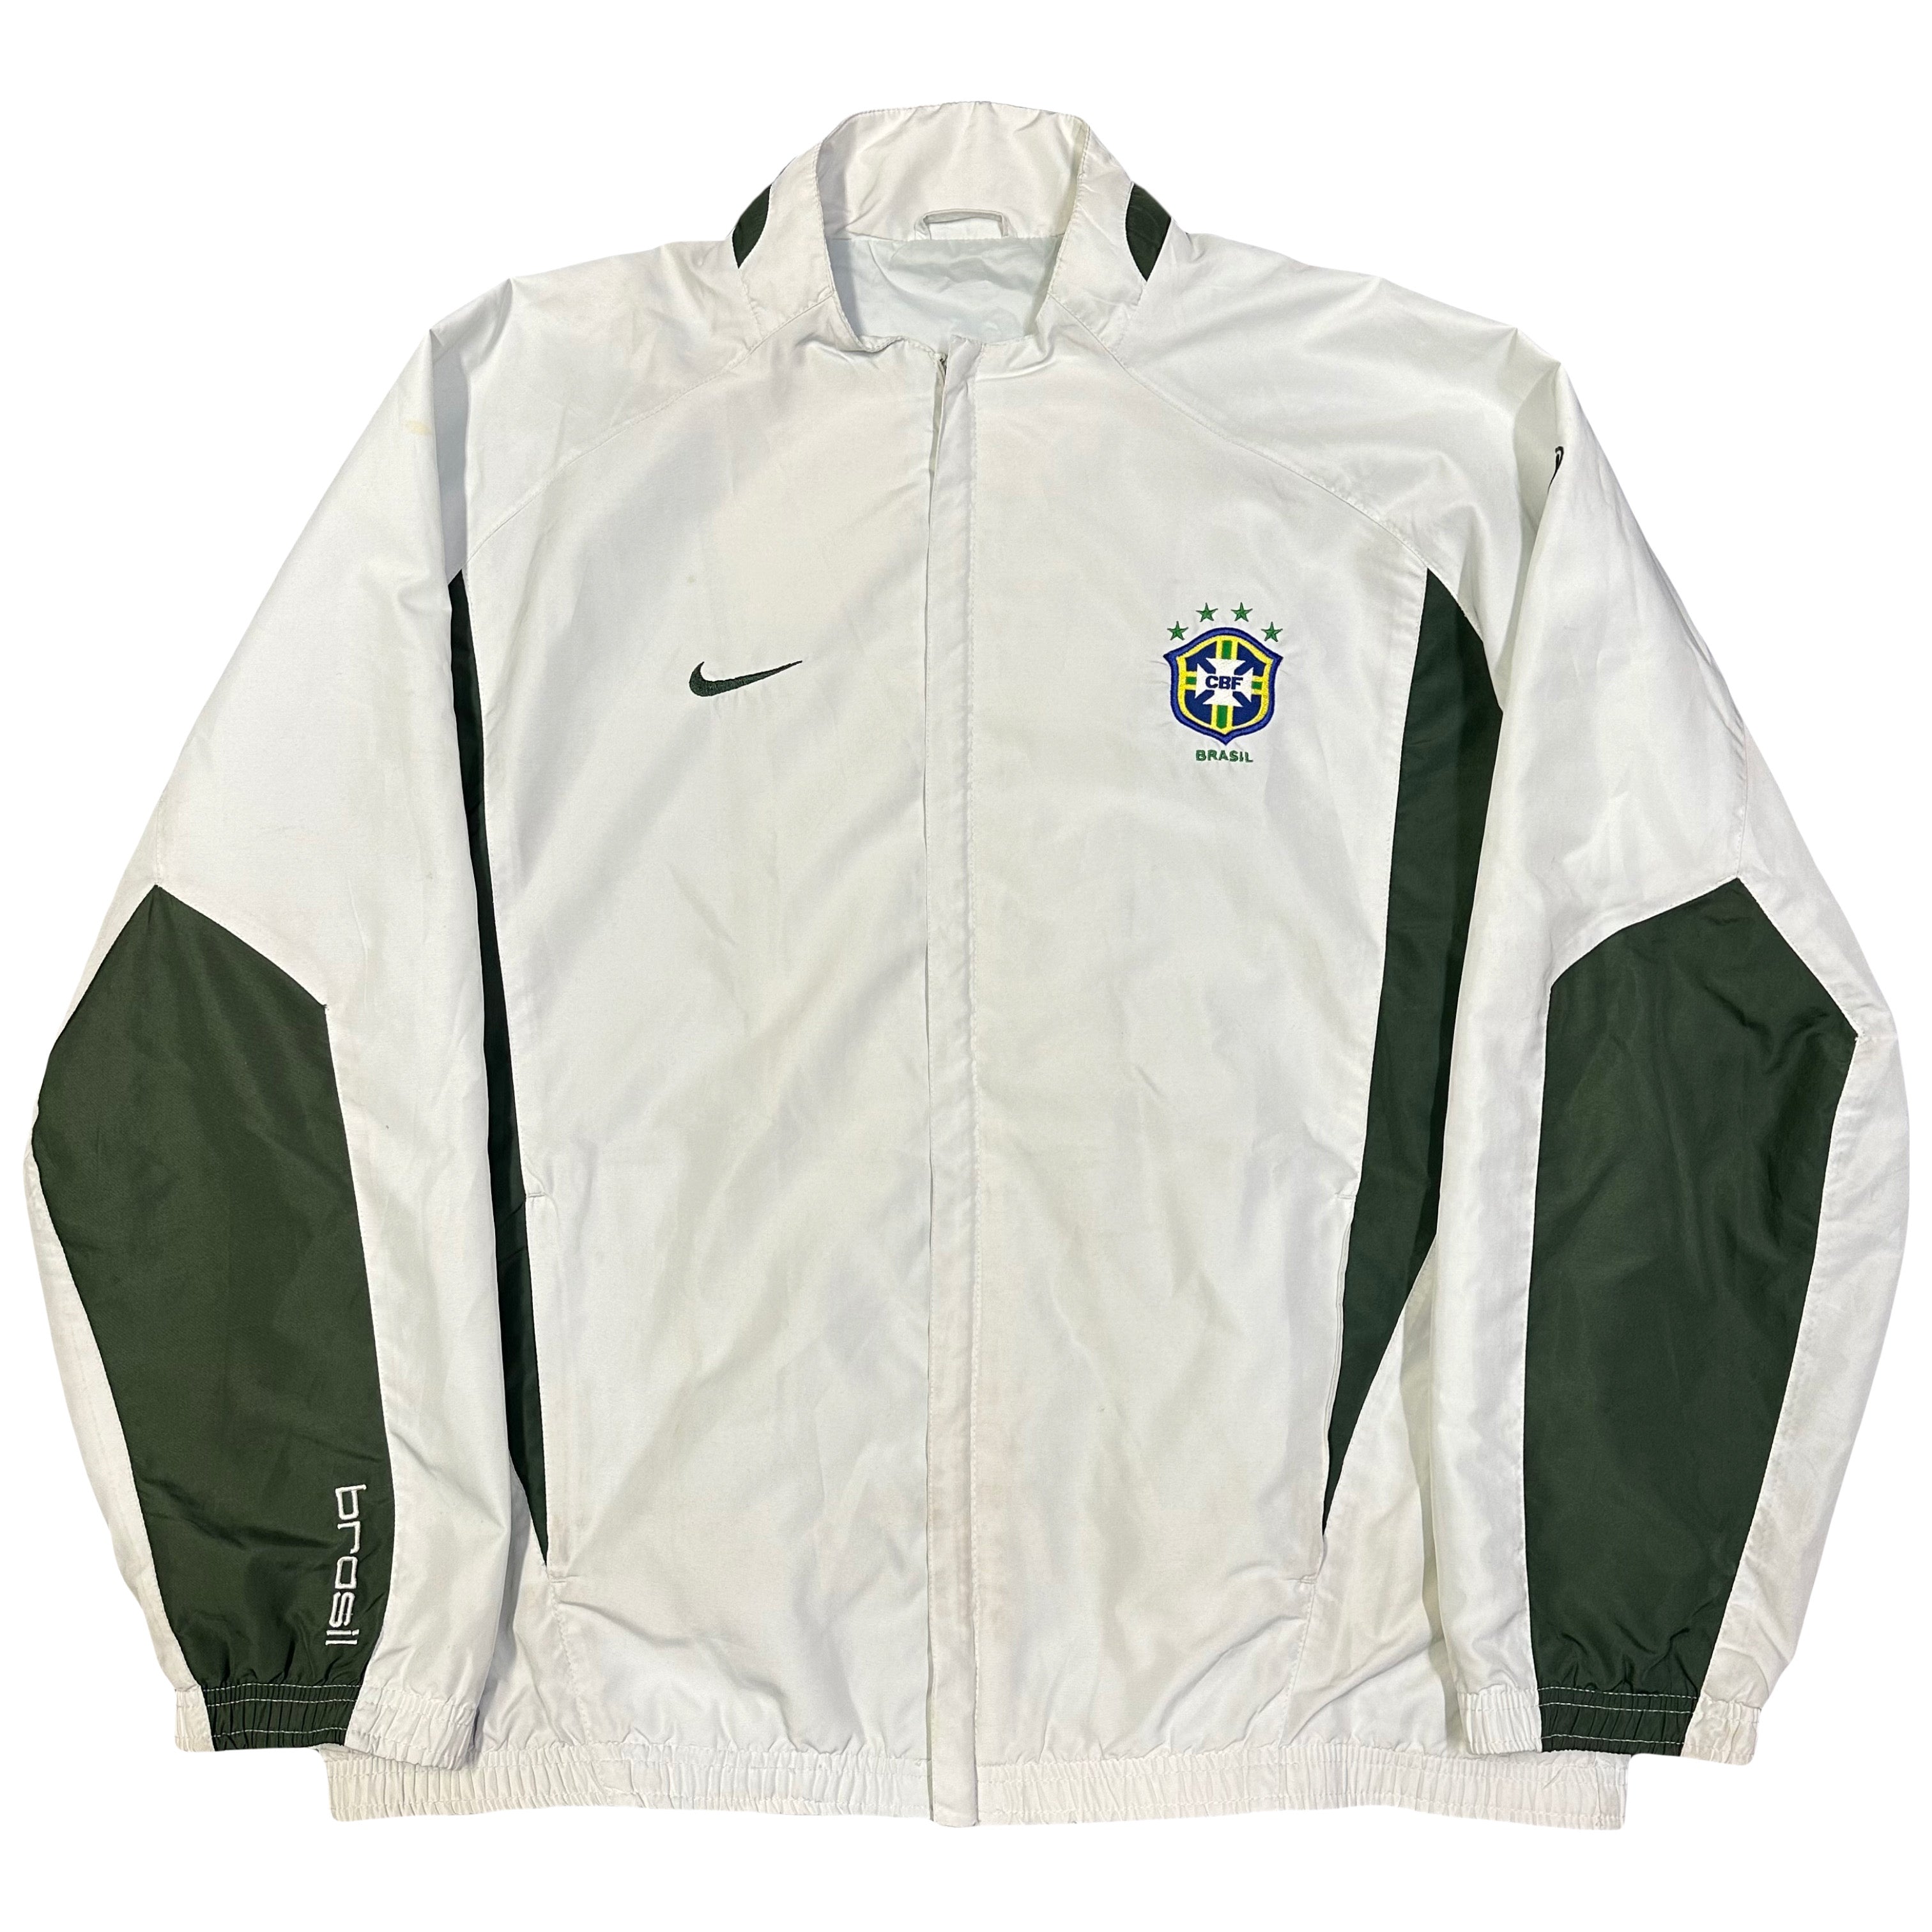 Nike Brazil 2002 Tracksuit ( M )